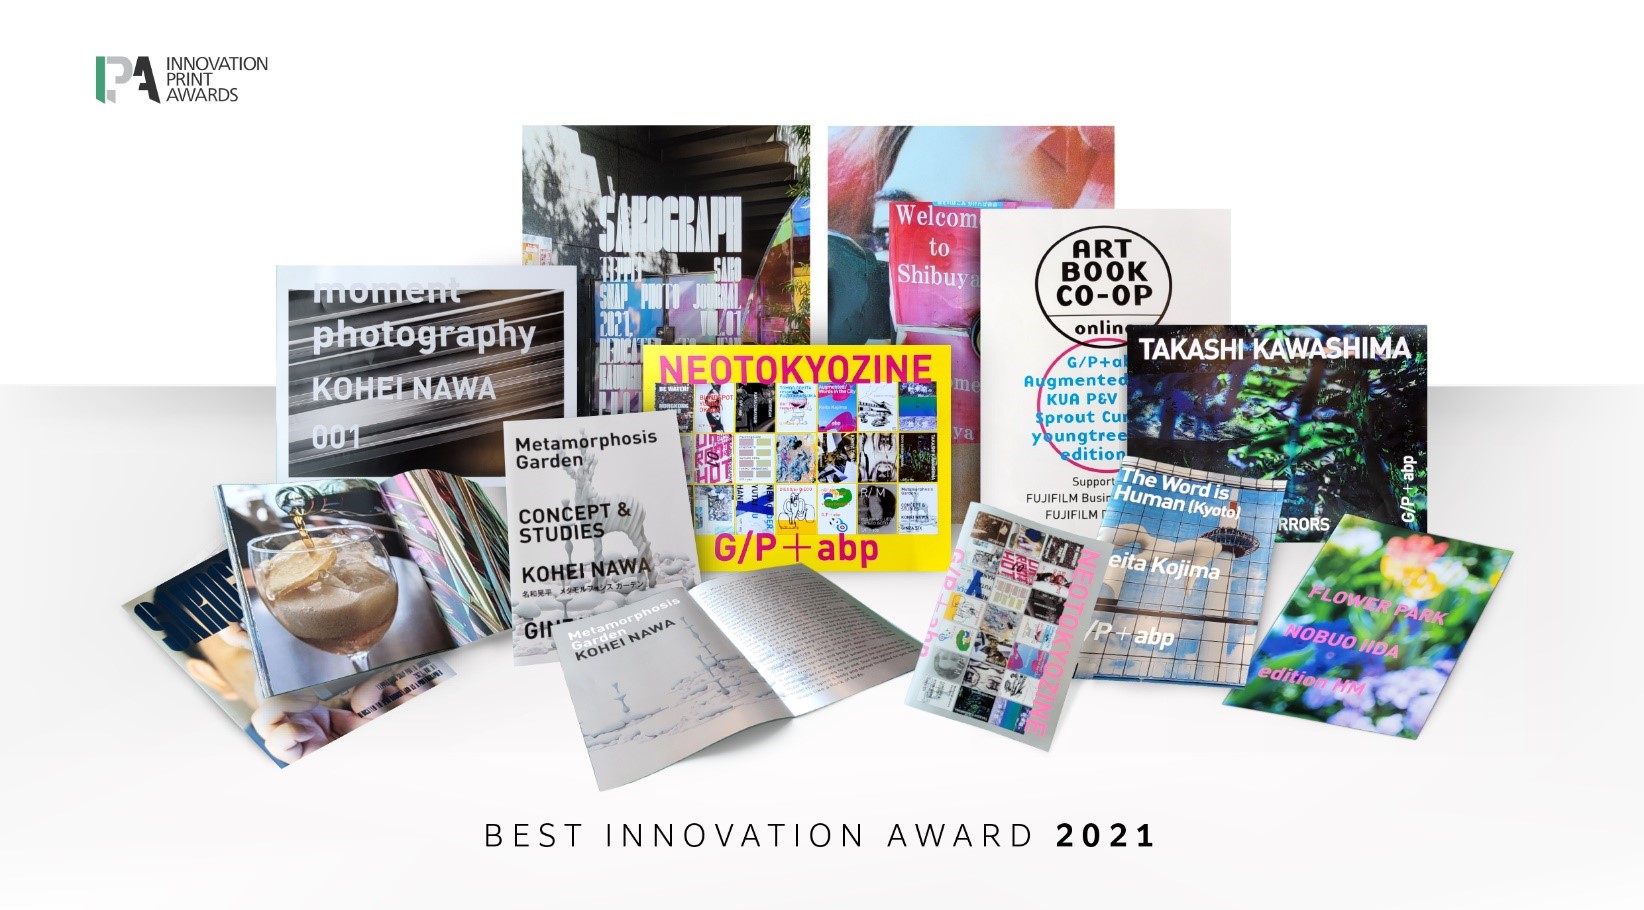 Best Innovation Award 2021